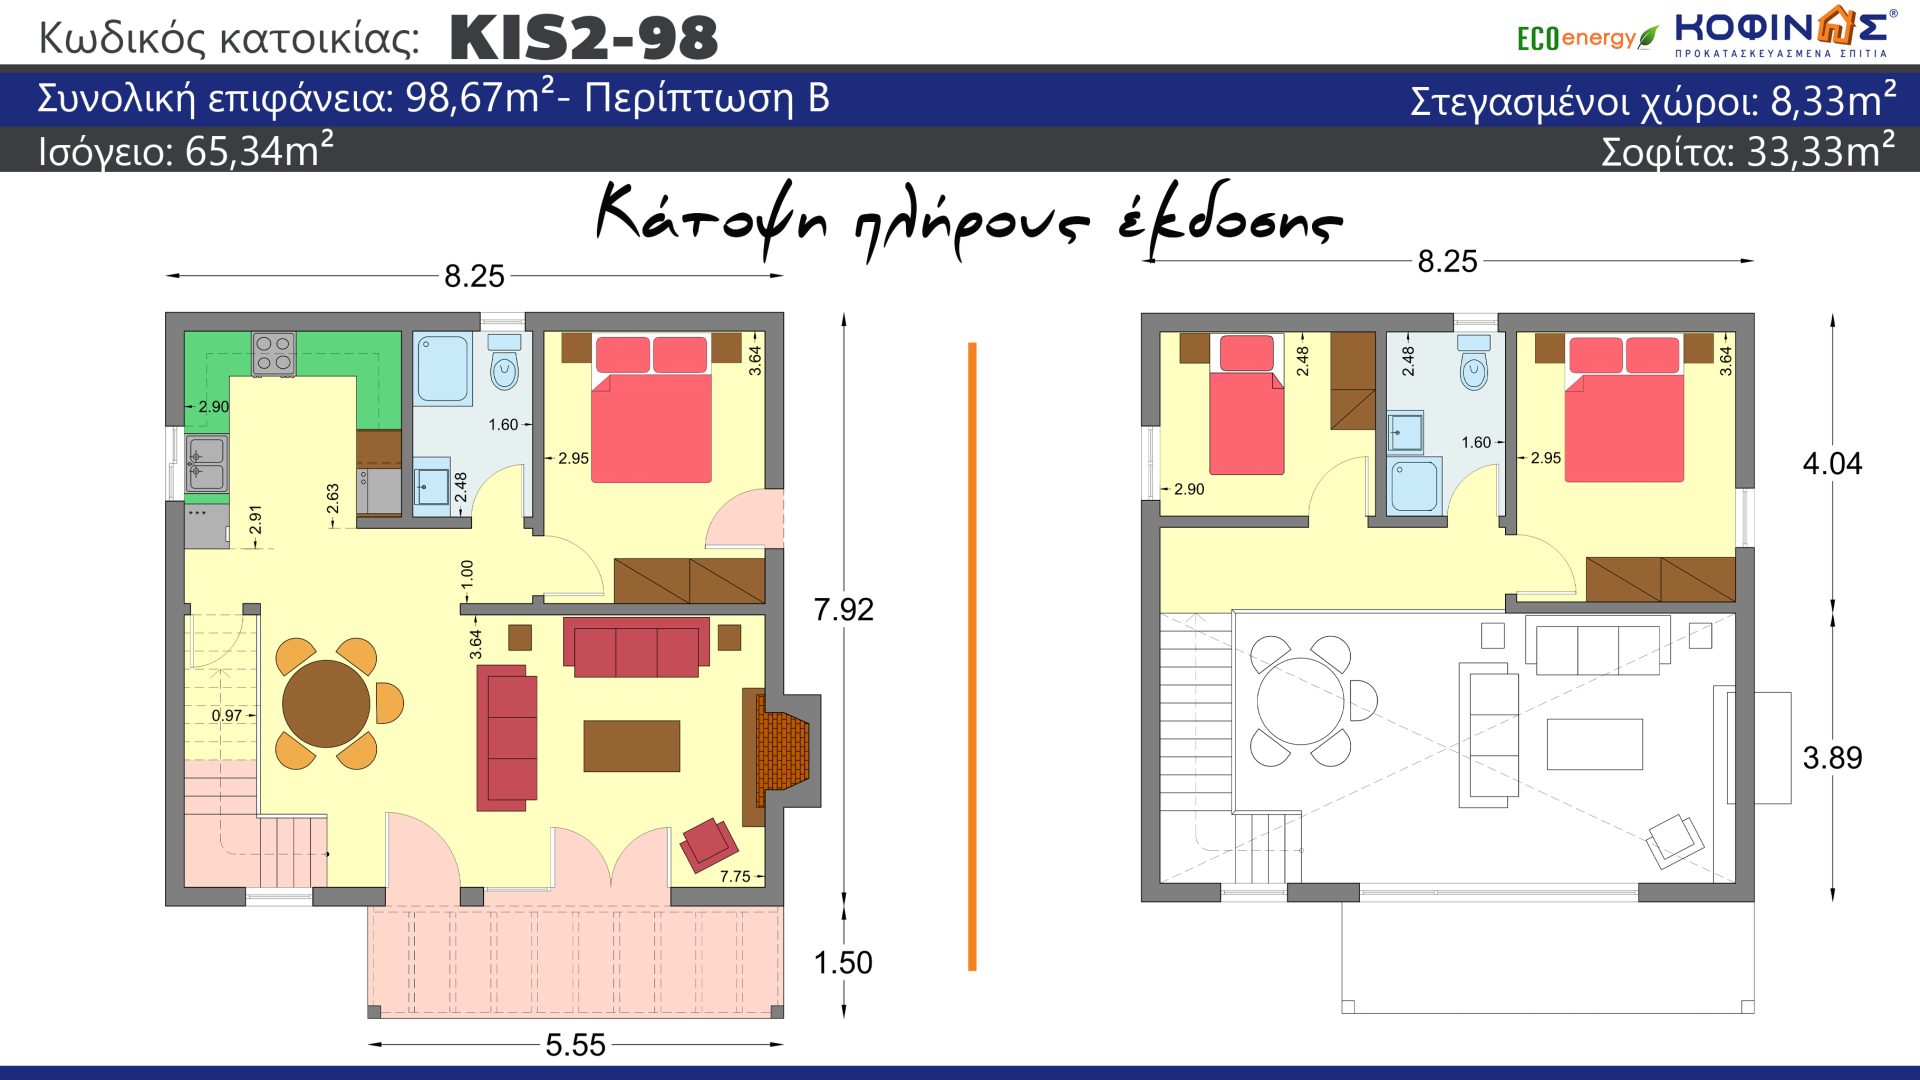 Ισόγεια Κατοικία με σοφίτα KIS2-98, συνολικής επιφάνειας 98,67 τ.μ. , συνολική επιφάνεια στεγασμένων χώρων 8.33 τ.μ.